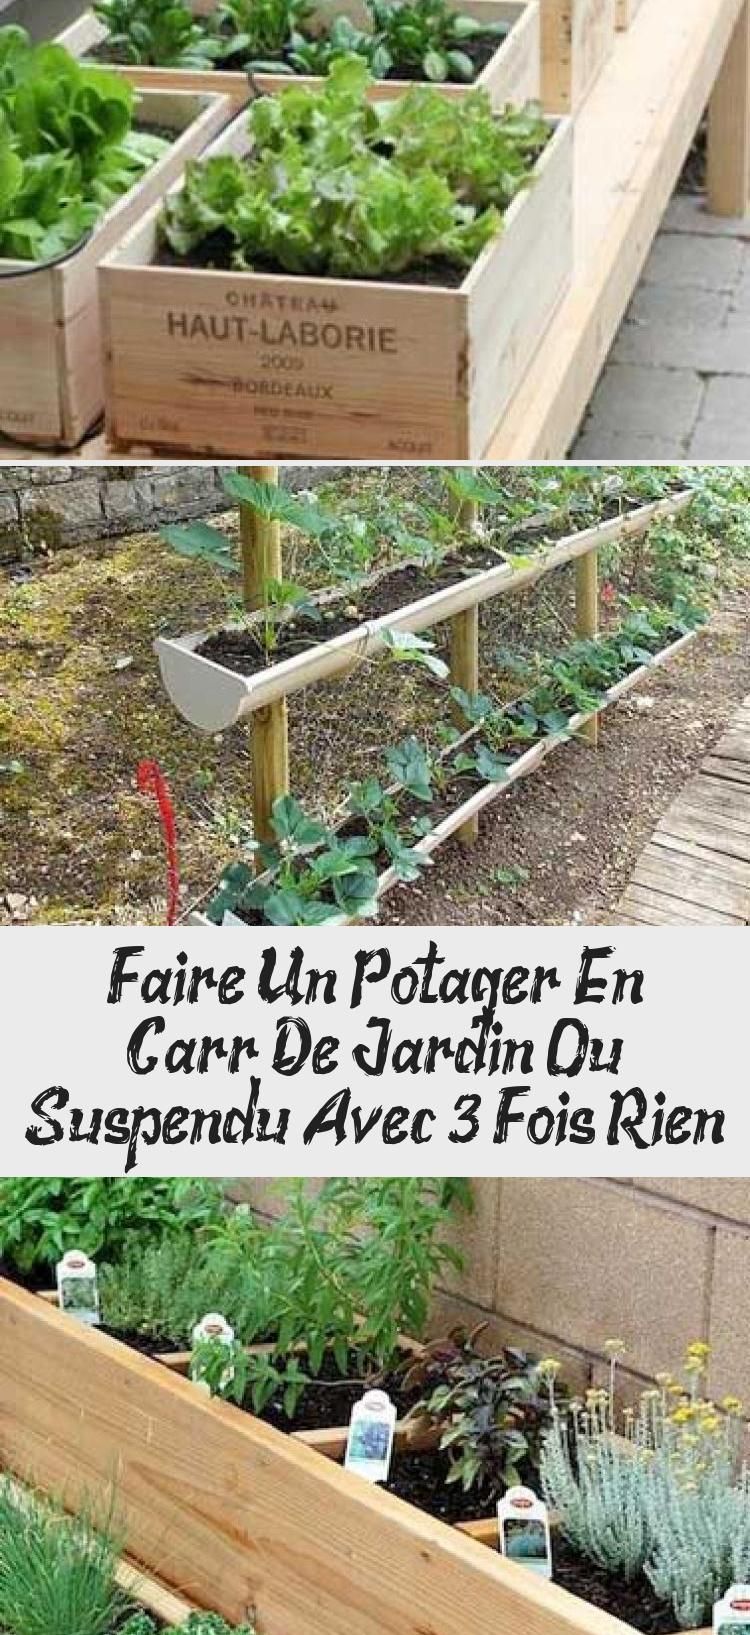 Le Jardin Suspendu Charmant Faire Un Potager En Carré De Jardin Ou Suspendu Avec 3 Fois